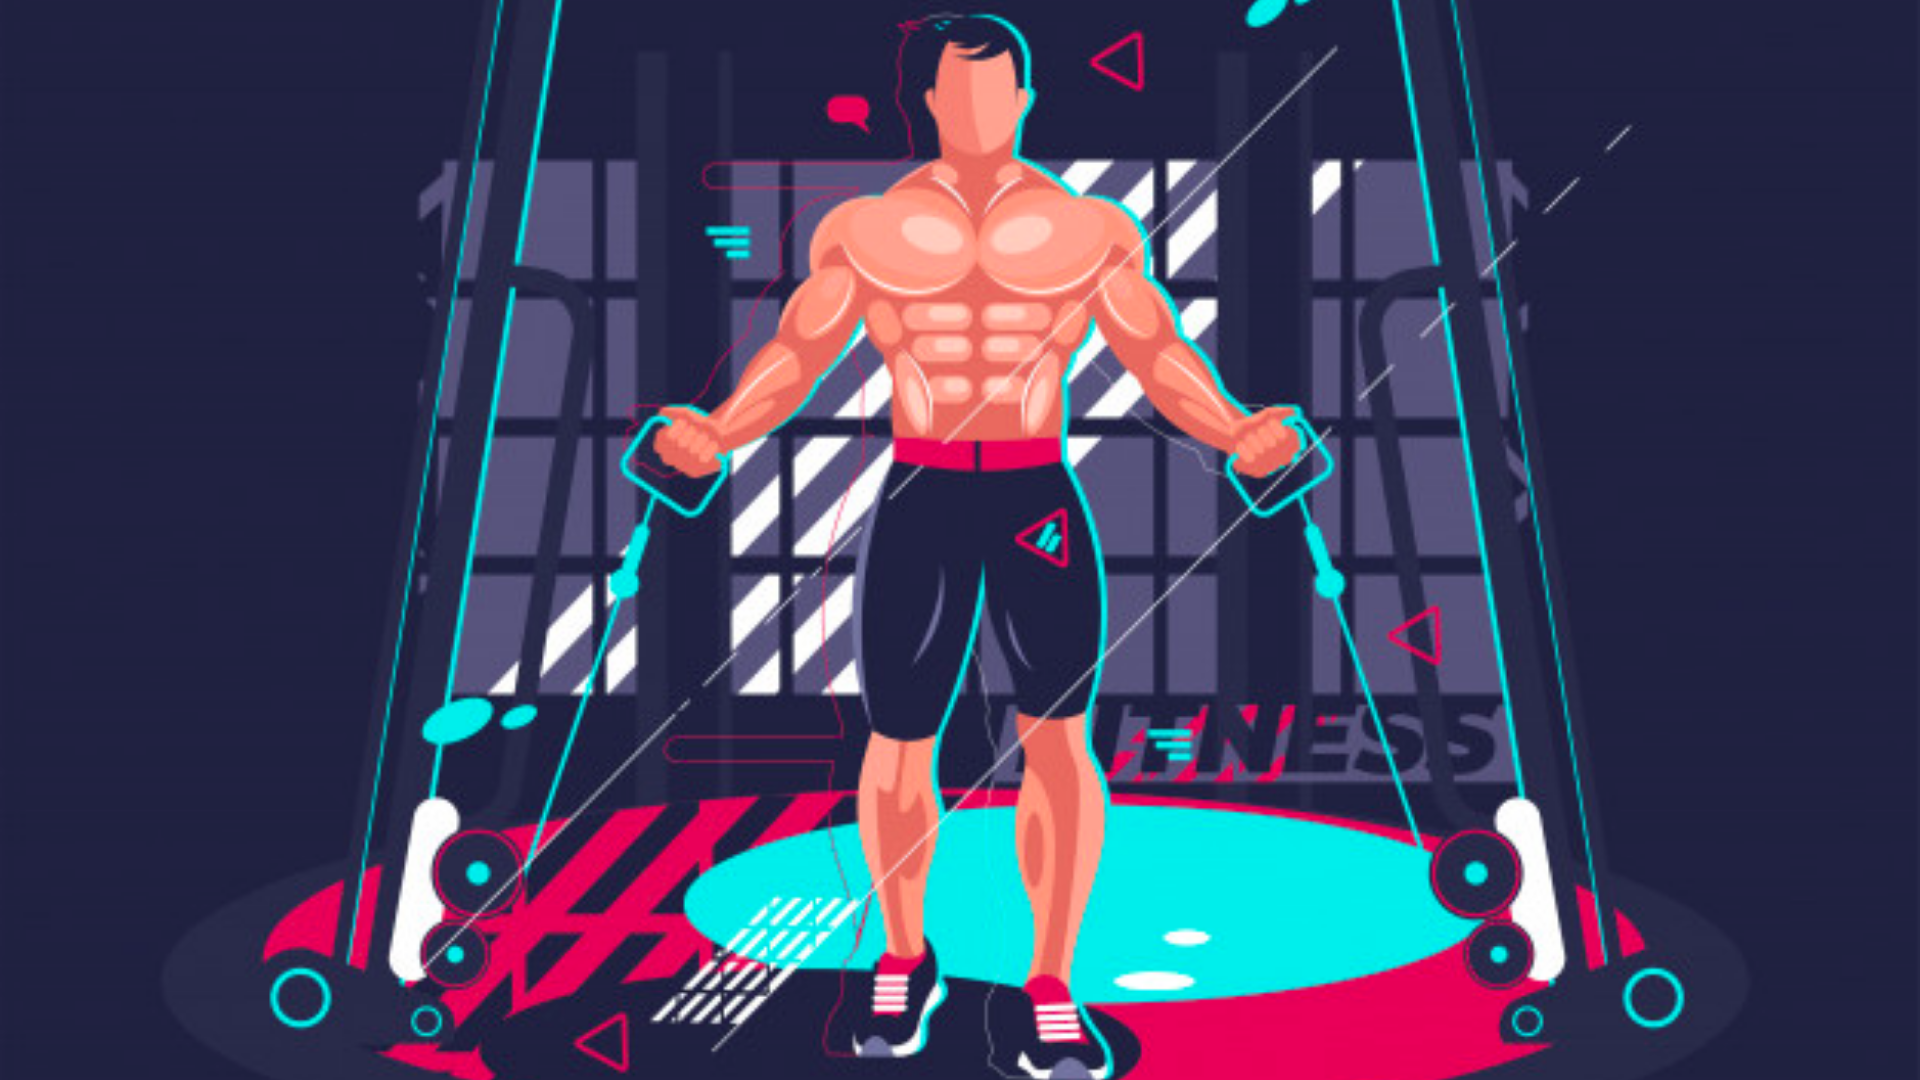 Fitness hareketi yapan bir adamın illustration görseli.